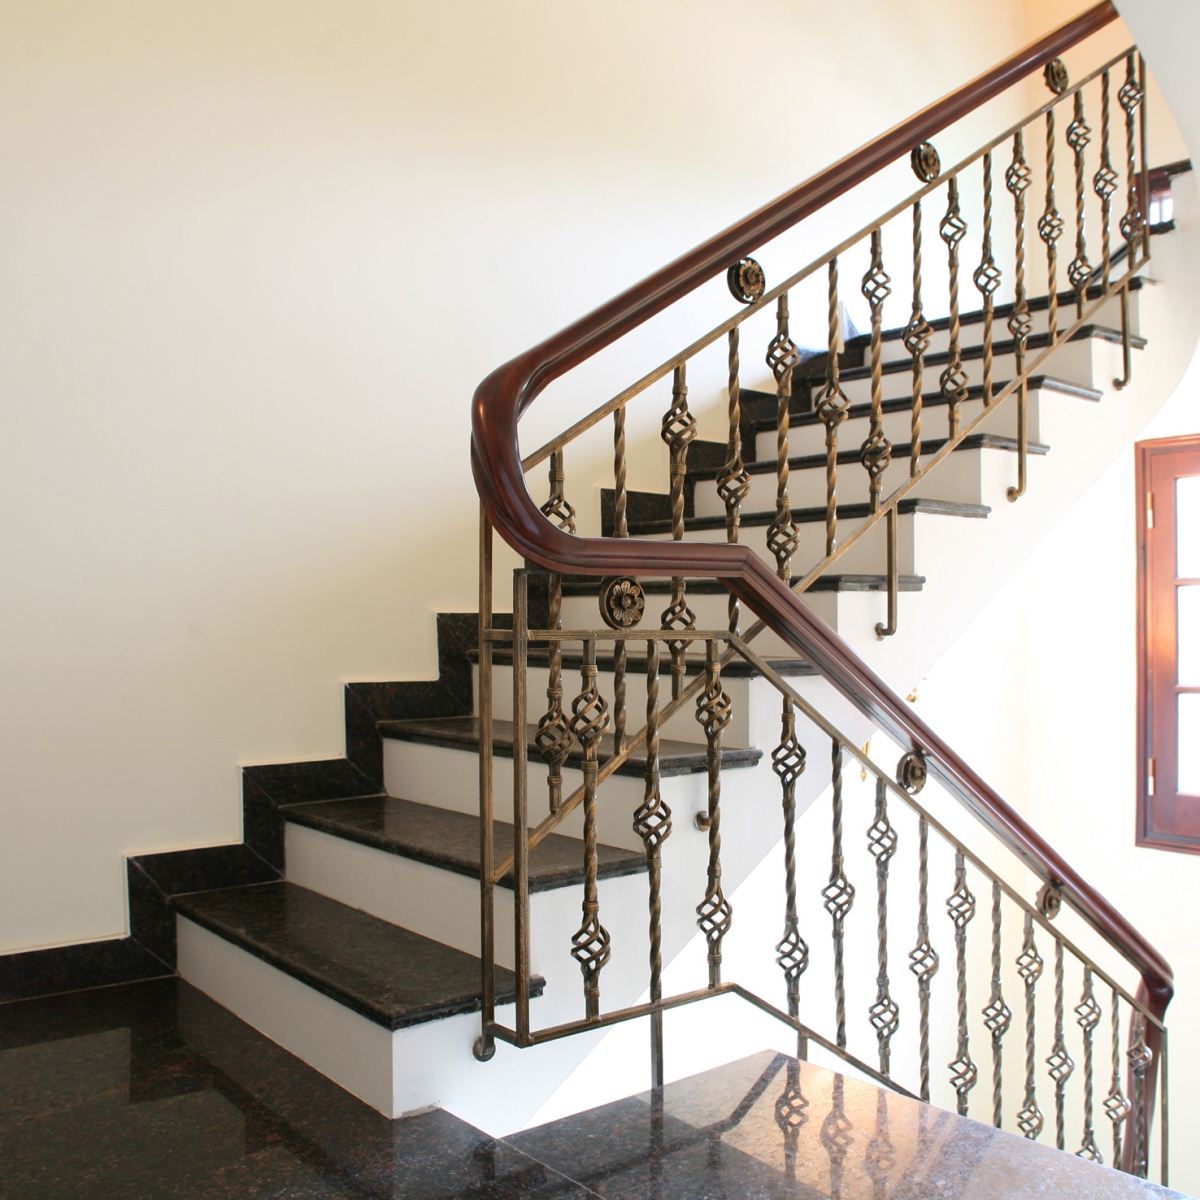 Cầu thang sắt: Cầu thang sắt là điểm nhấn nổi bật trong không gian nhà ở của bạn. Với thiết kế độc đáo, tiên tiến, cầu thang sắt sẽ tăng thêm sự hiện đại và tinh tế cho không gian sống của bạn. Đảm bảo sự an toàn cho gia đình với các thiết kế ổn định và chắc chắn.